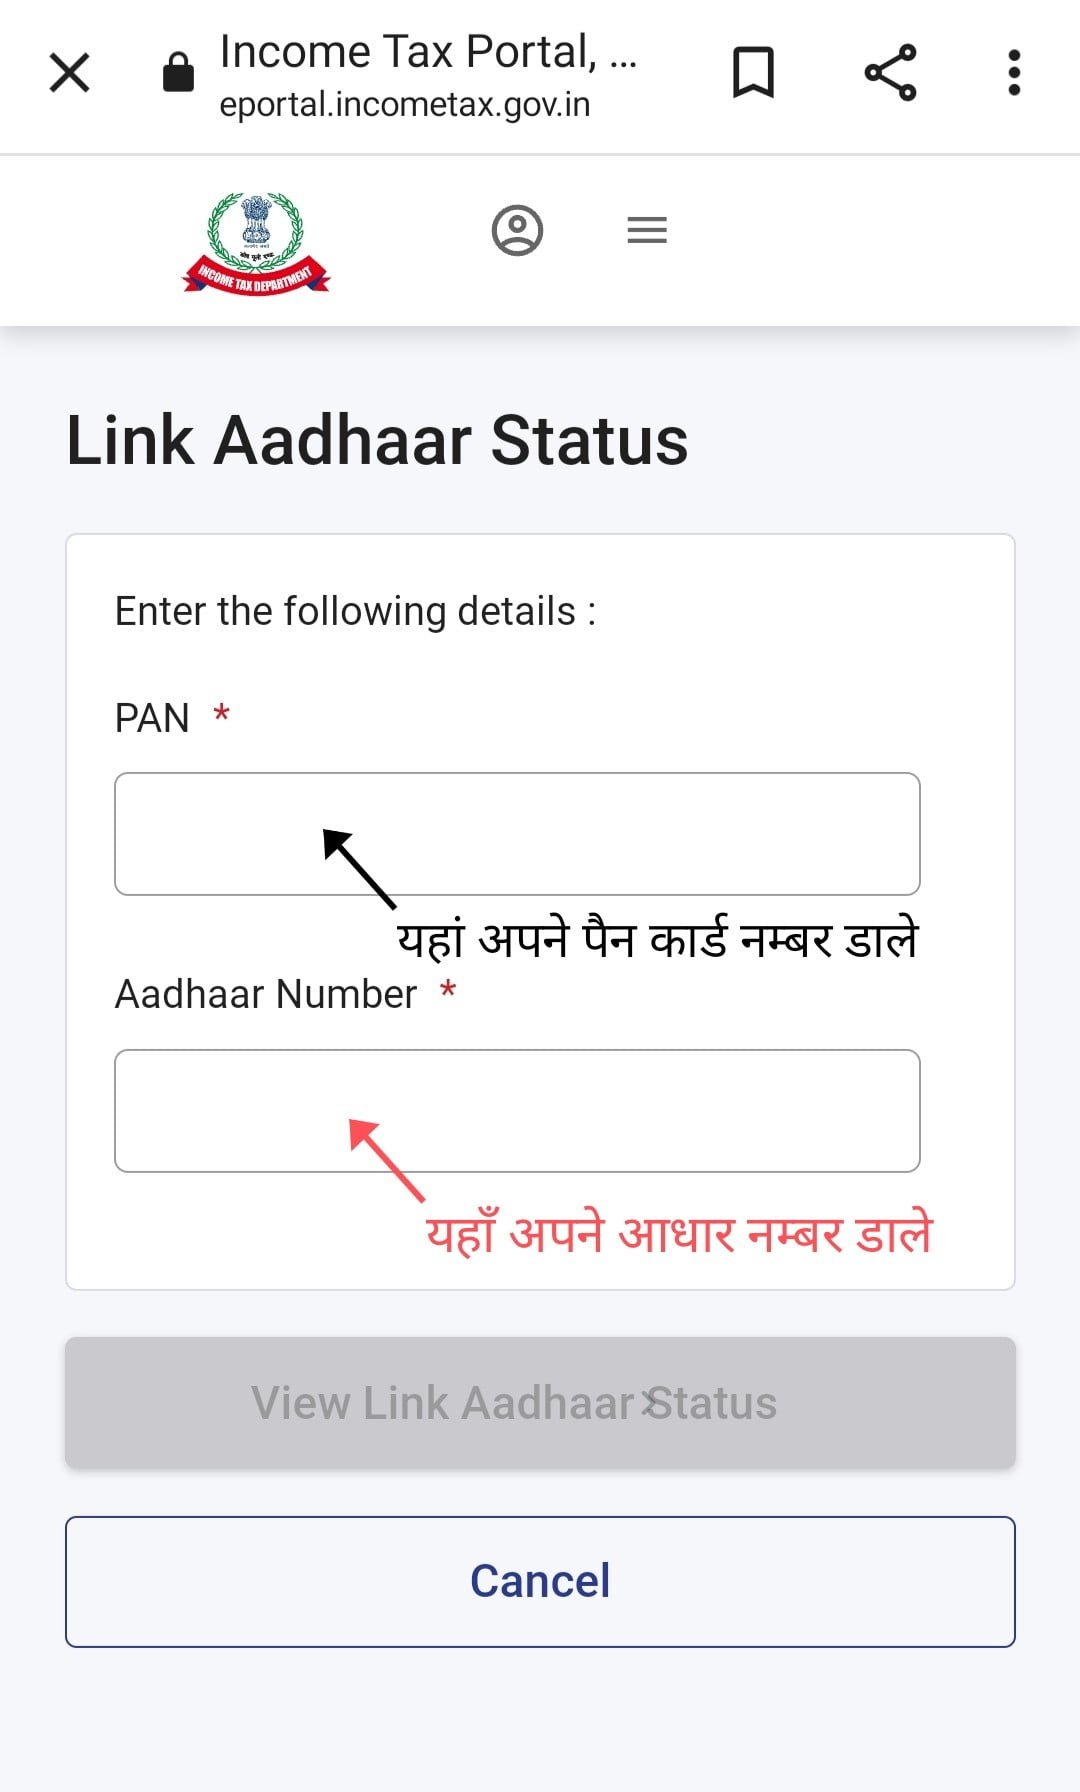 Pan Adhar Link Status